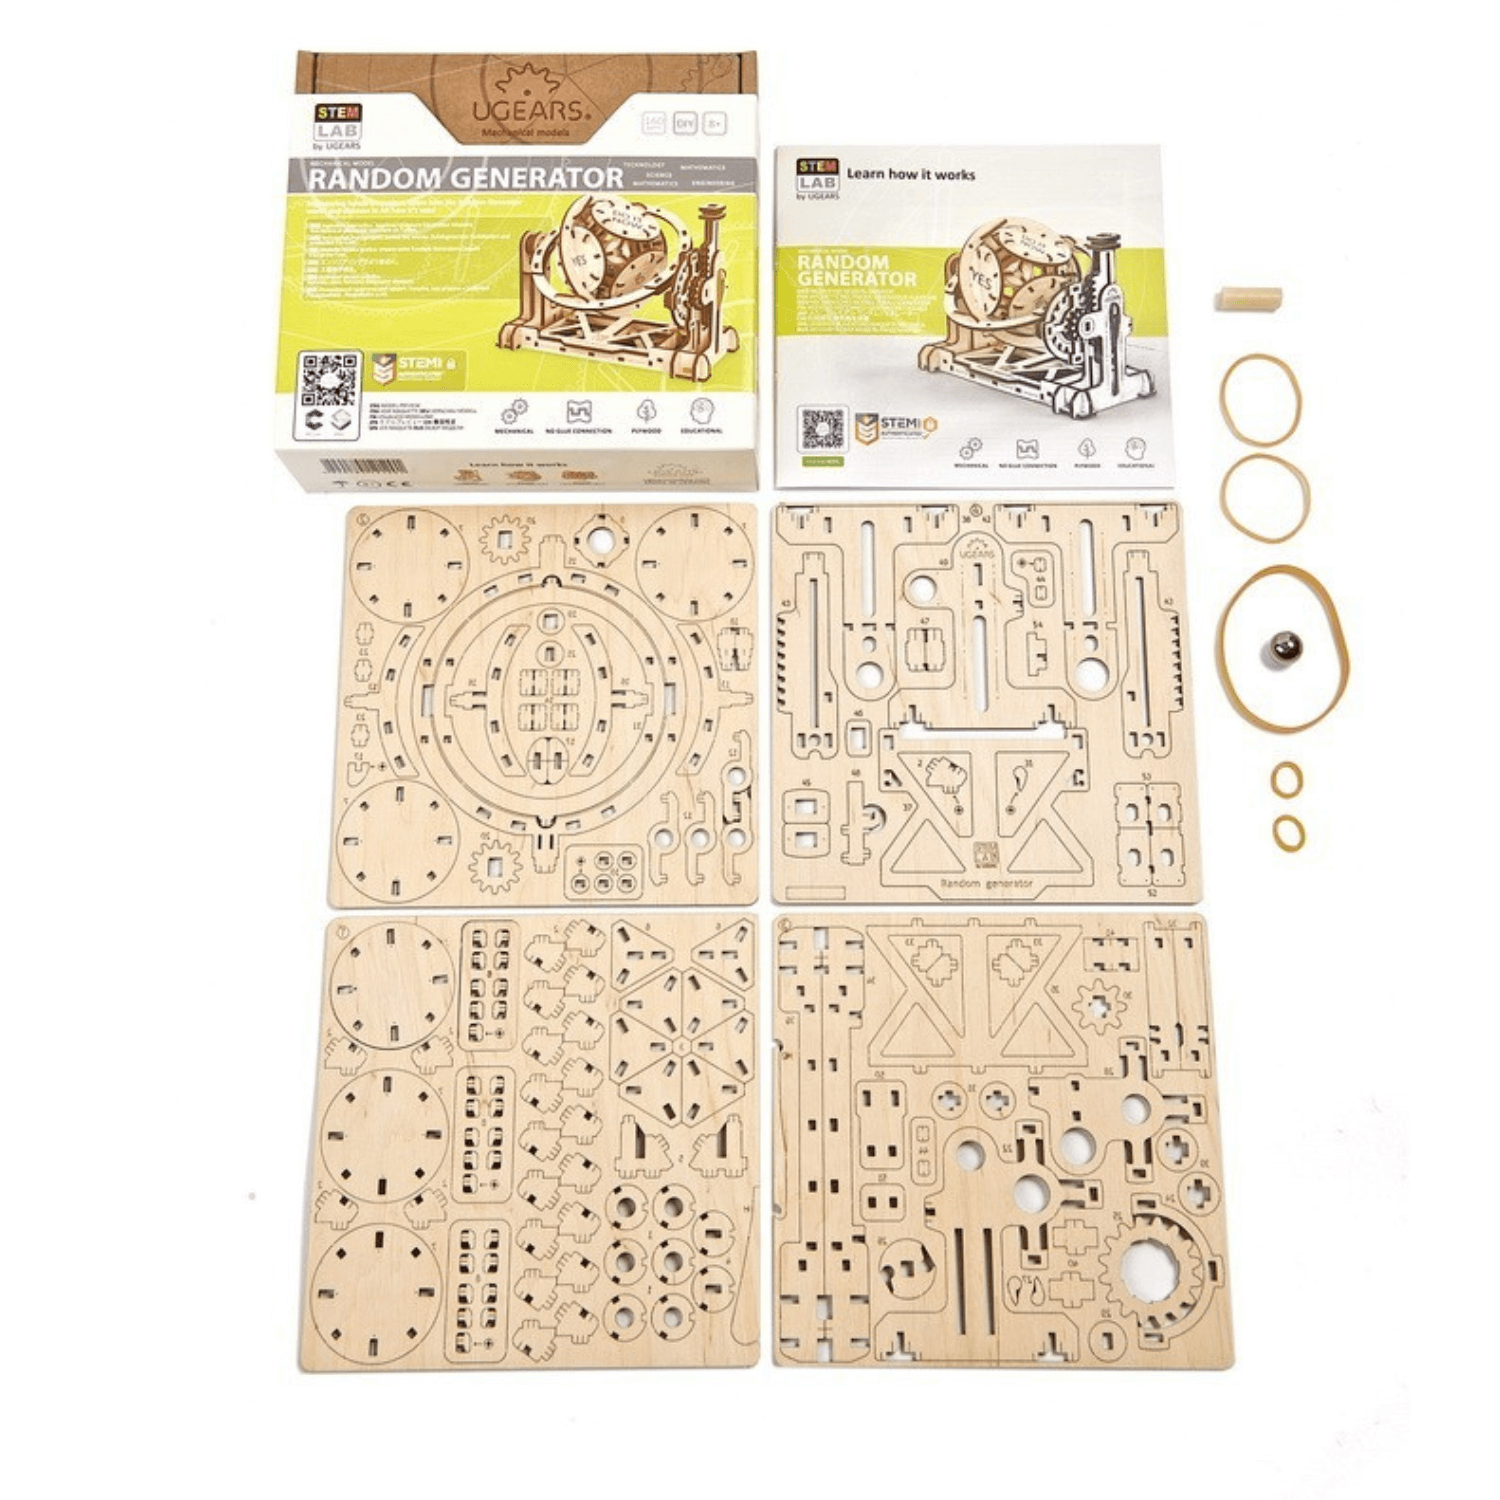 Willekeurige mechanische houten puzzel Ugears--